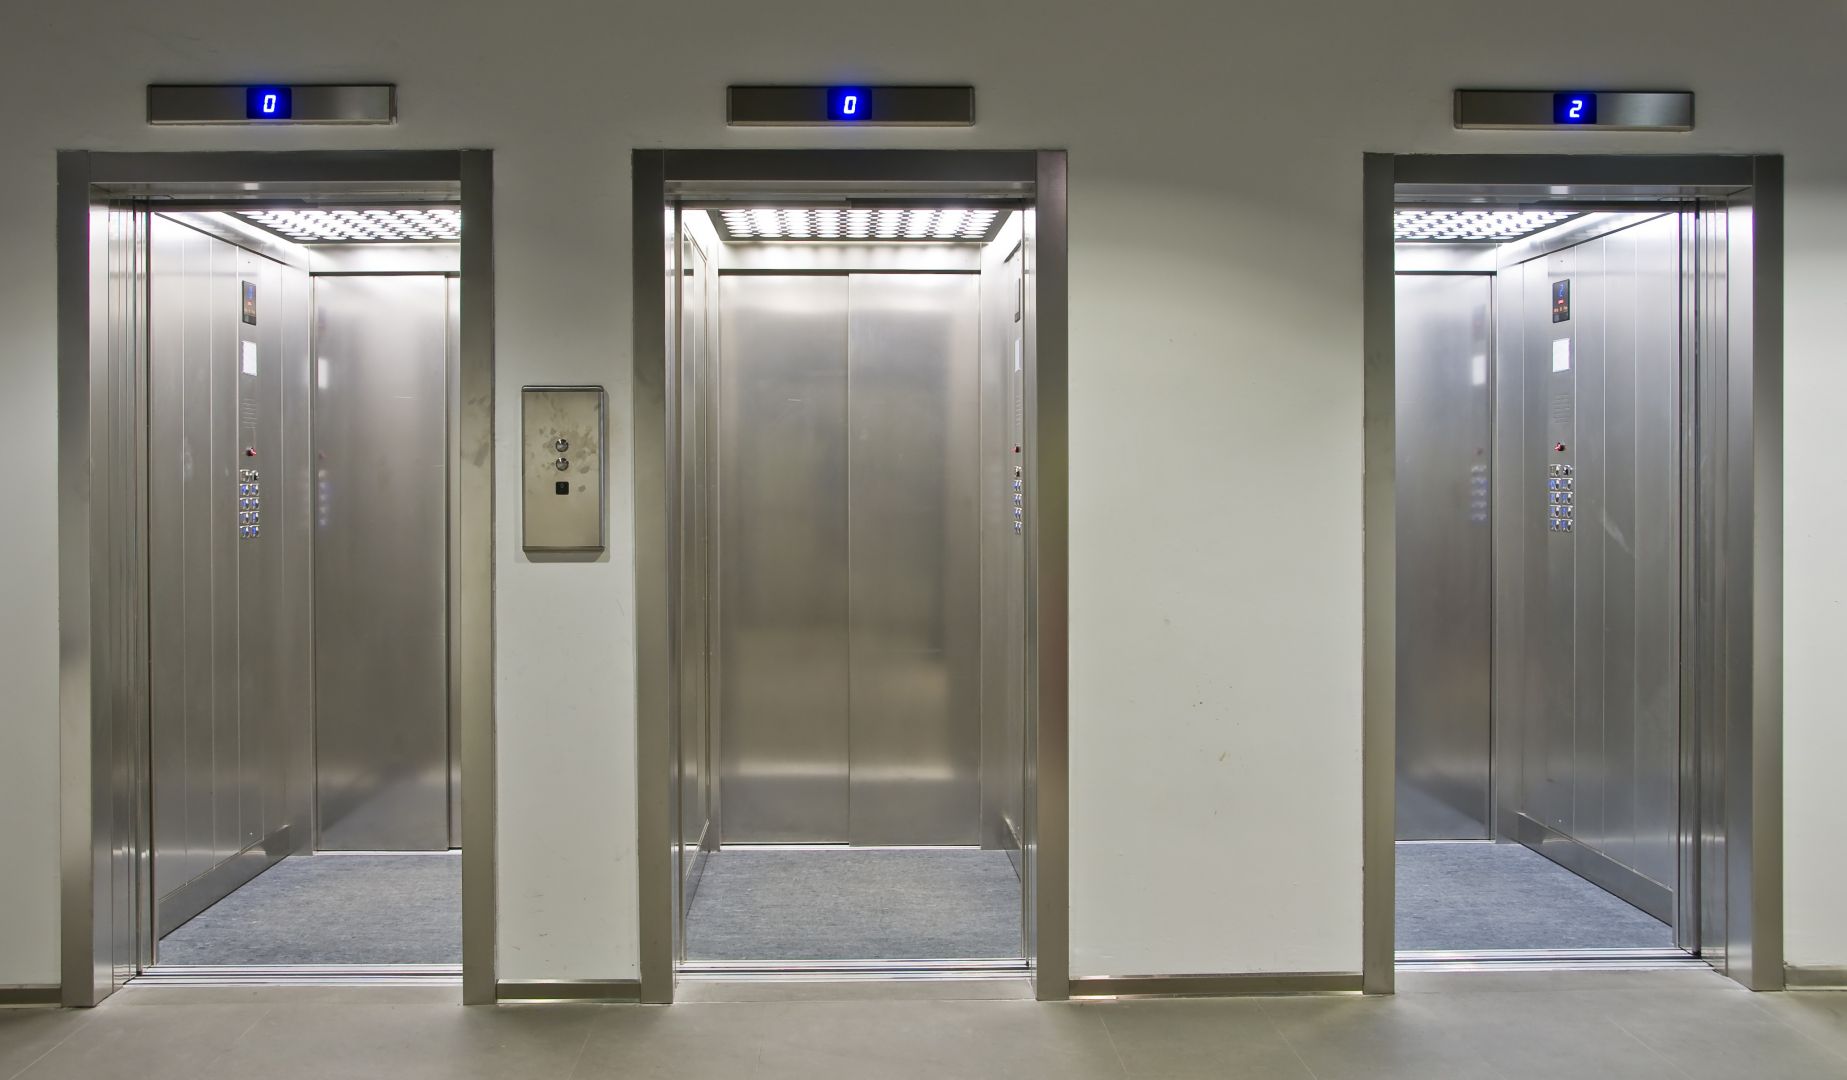 Zakázka na výměna 2 ks výtahů v budově (Výtahy a servis) - Liberec